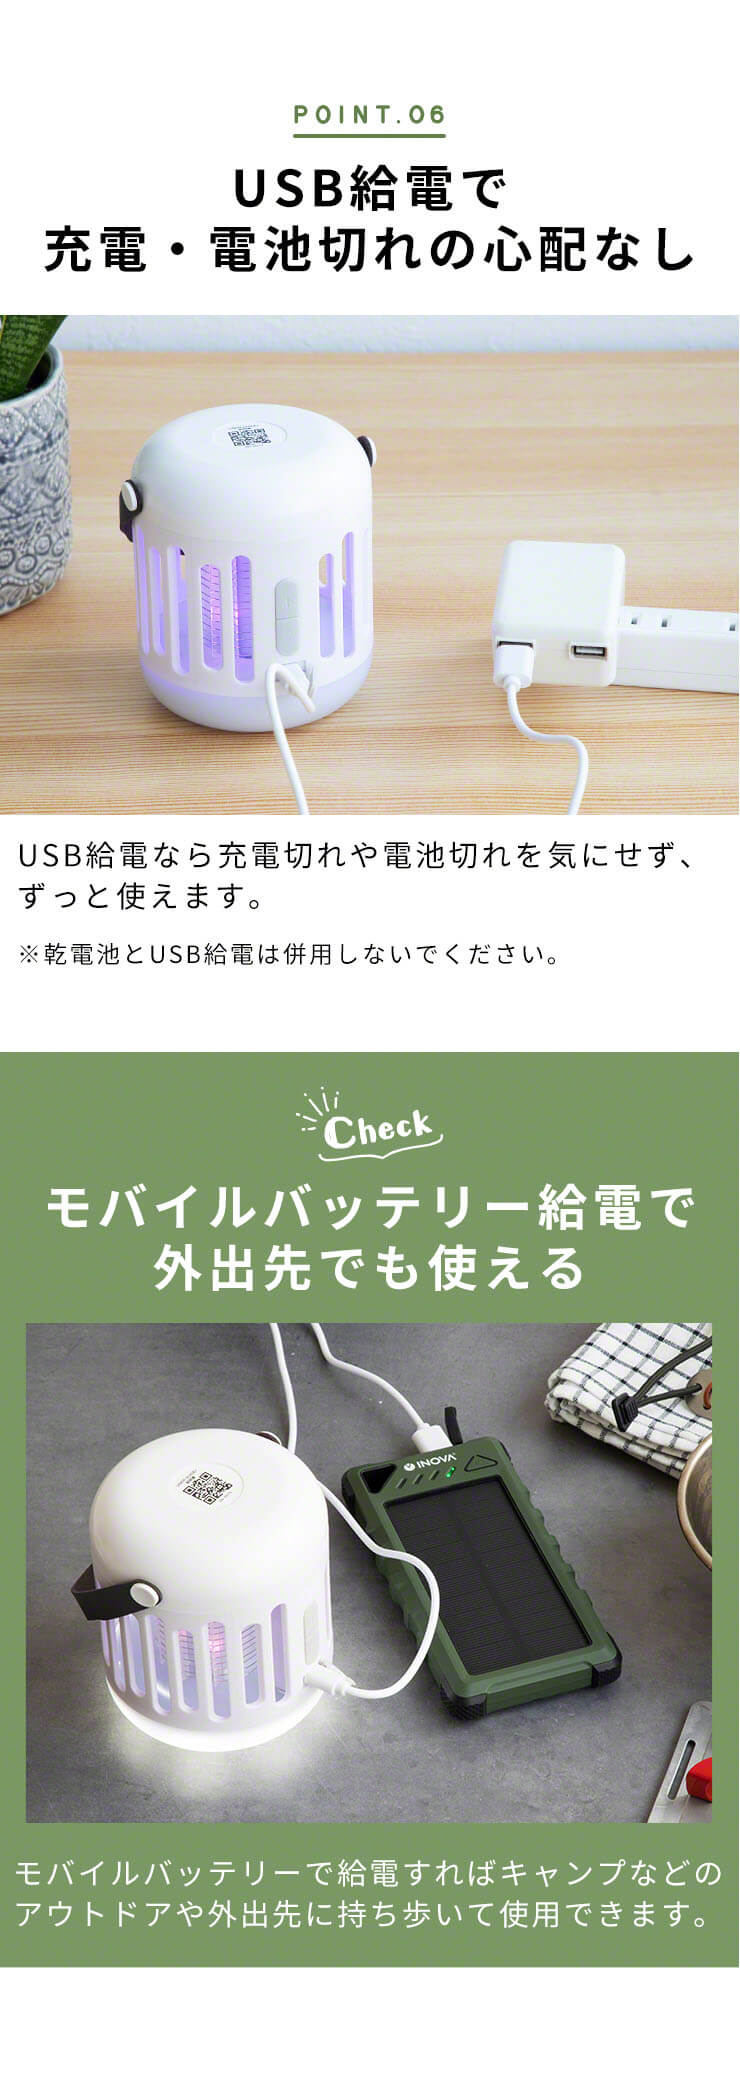 USB給電も可能